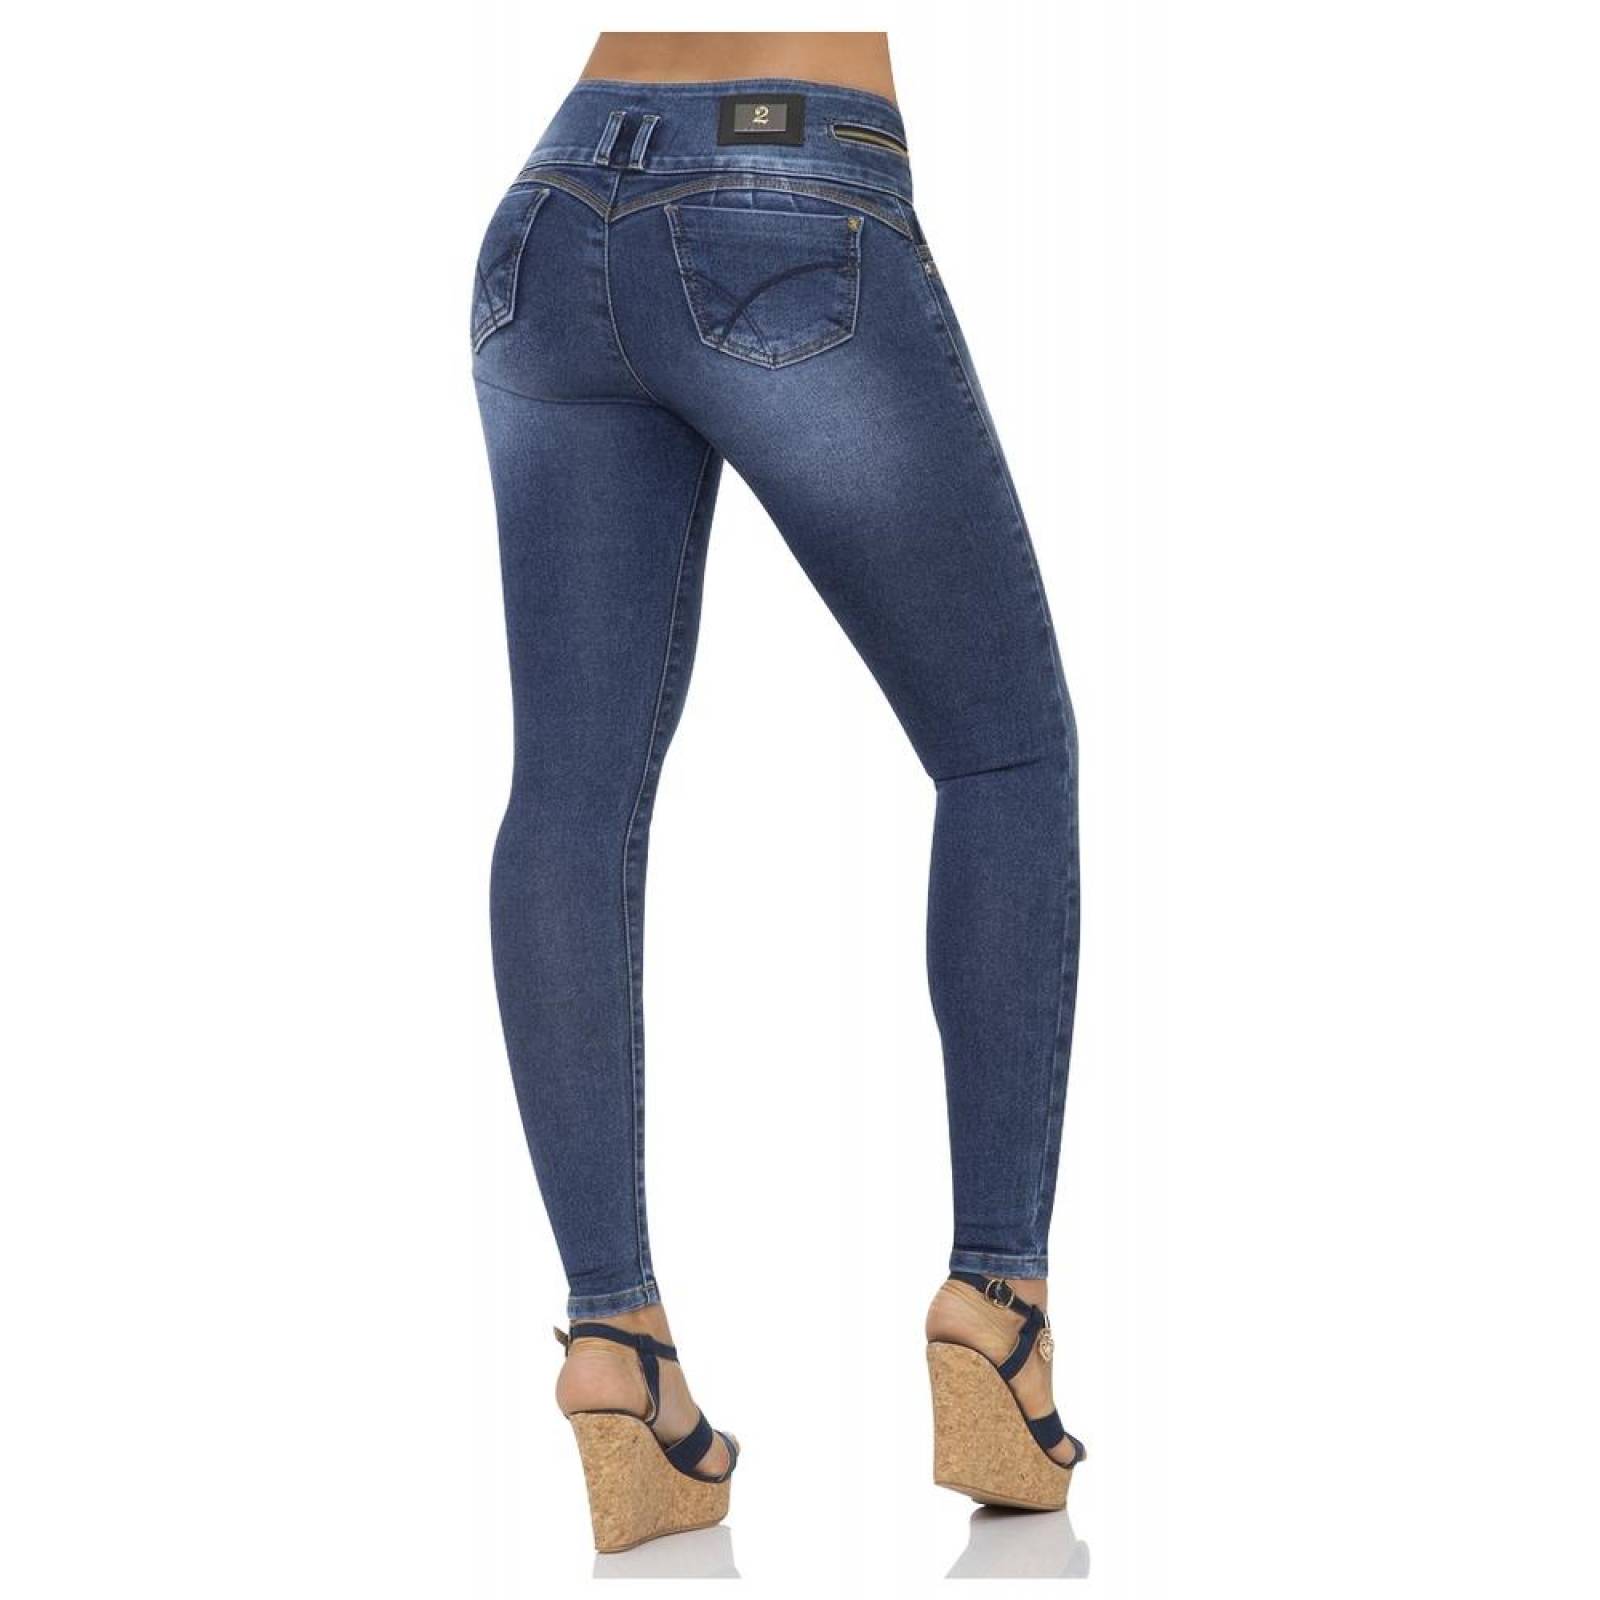 Jeans Moda Mujer Salvaje Tentación Stone 71803204 Mezclilla Stretch 